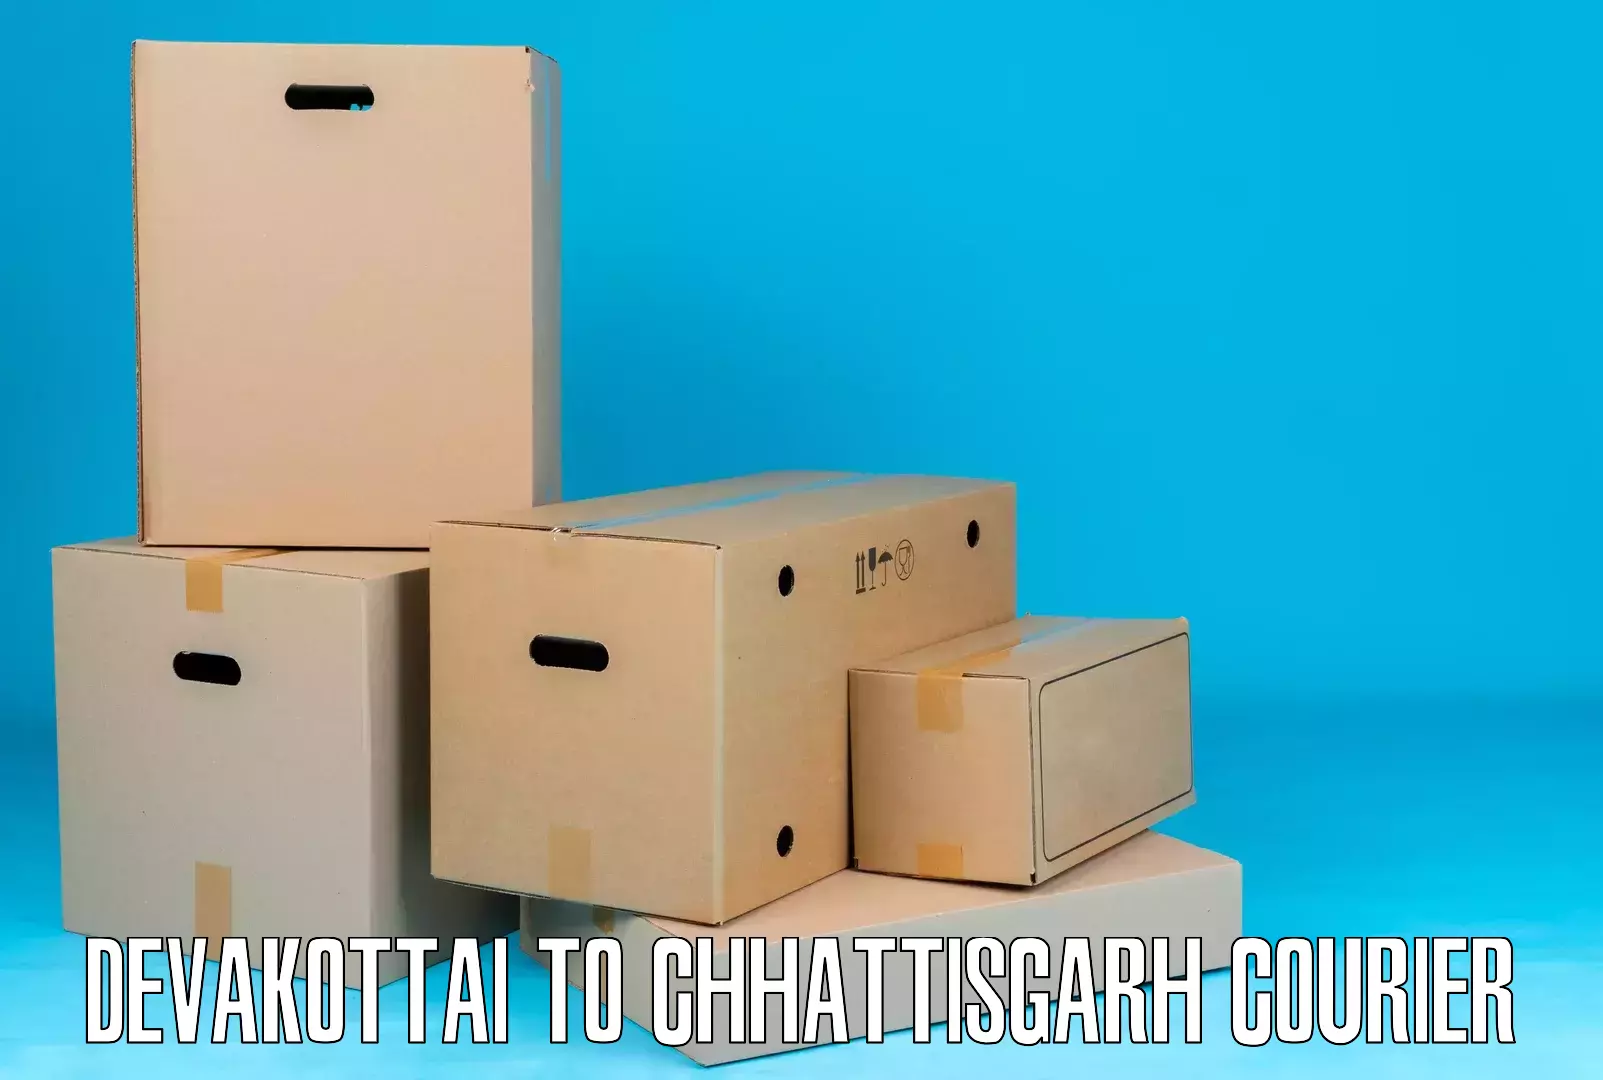 Smart courier technologies Devakottai to Bastar